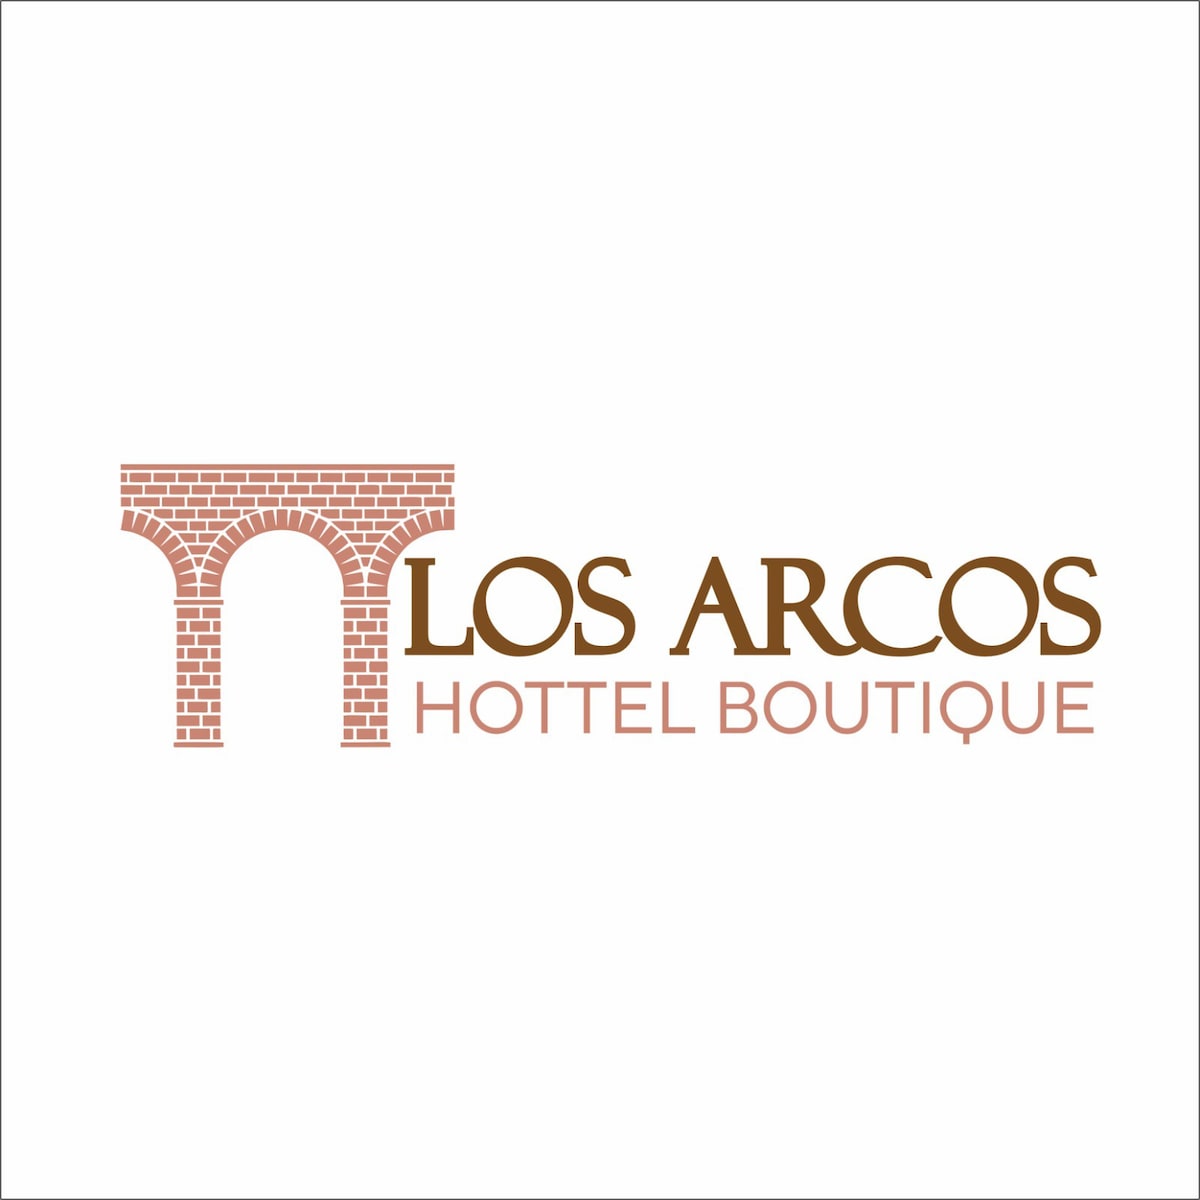 Los Arcos Hottel精品店